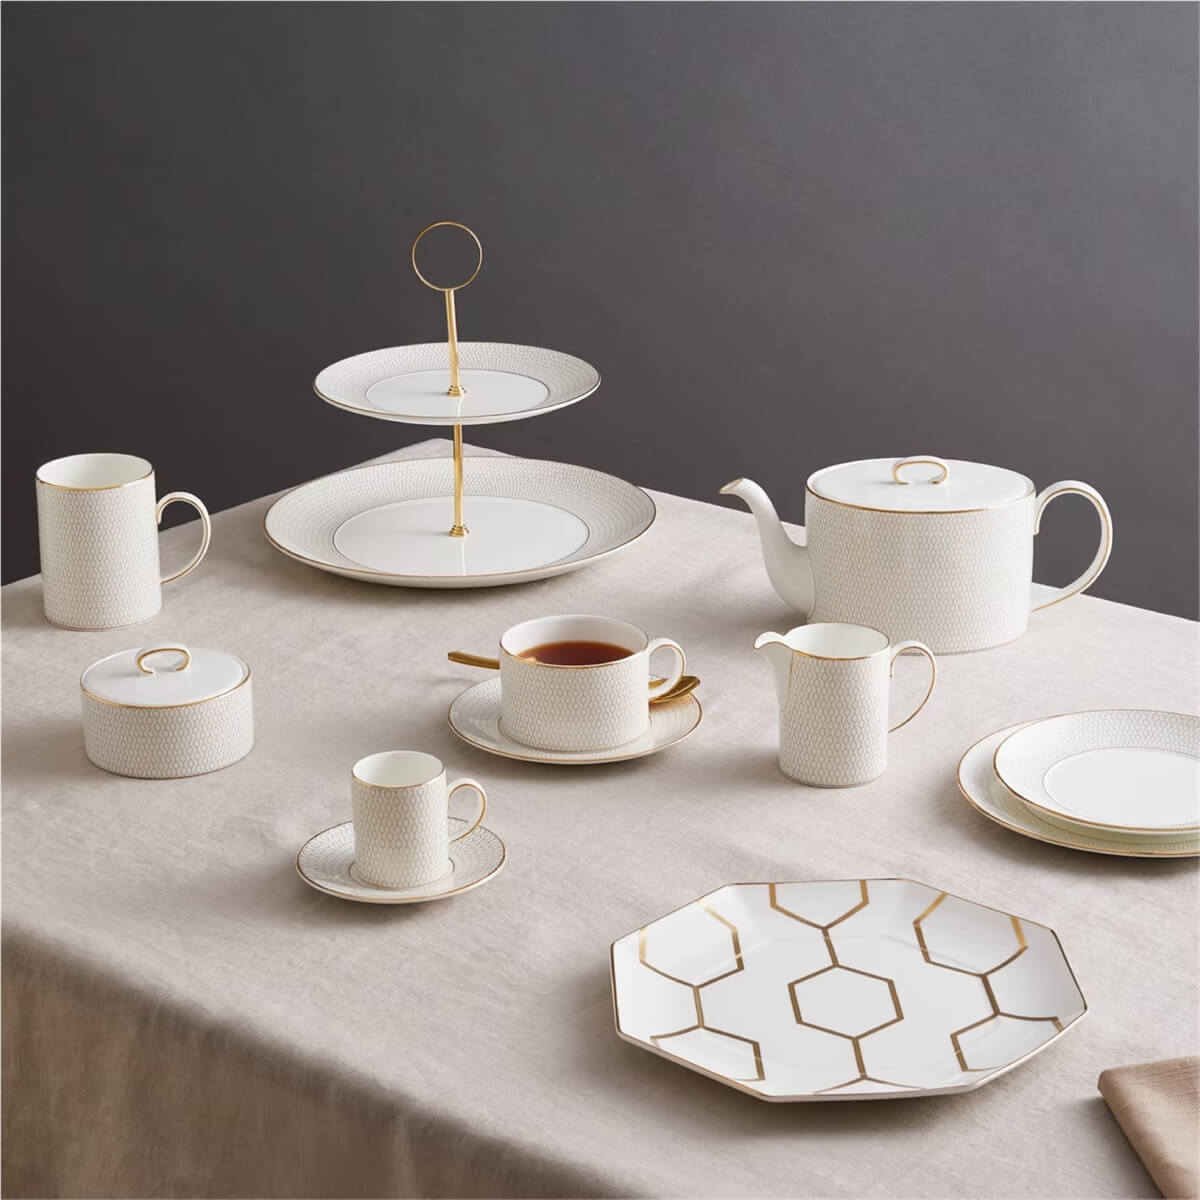 Luxury designer coffee mugs set